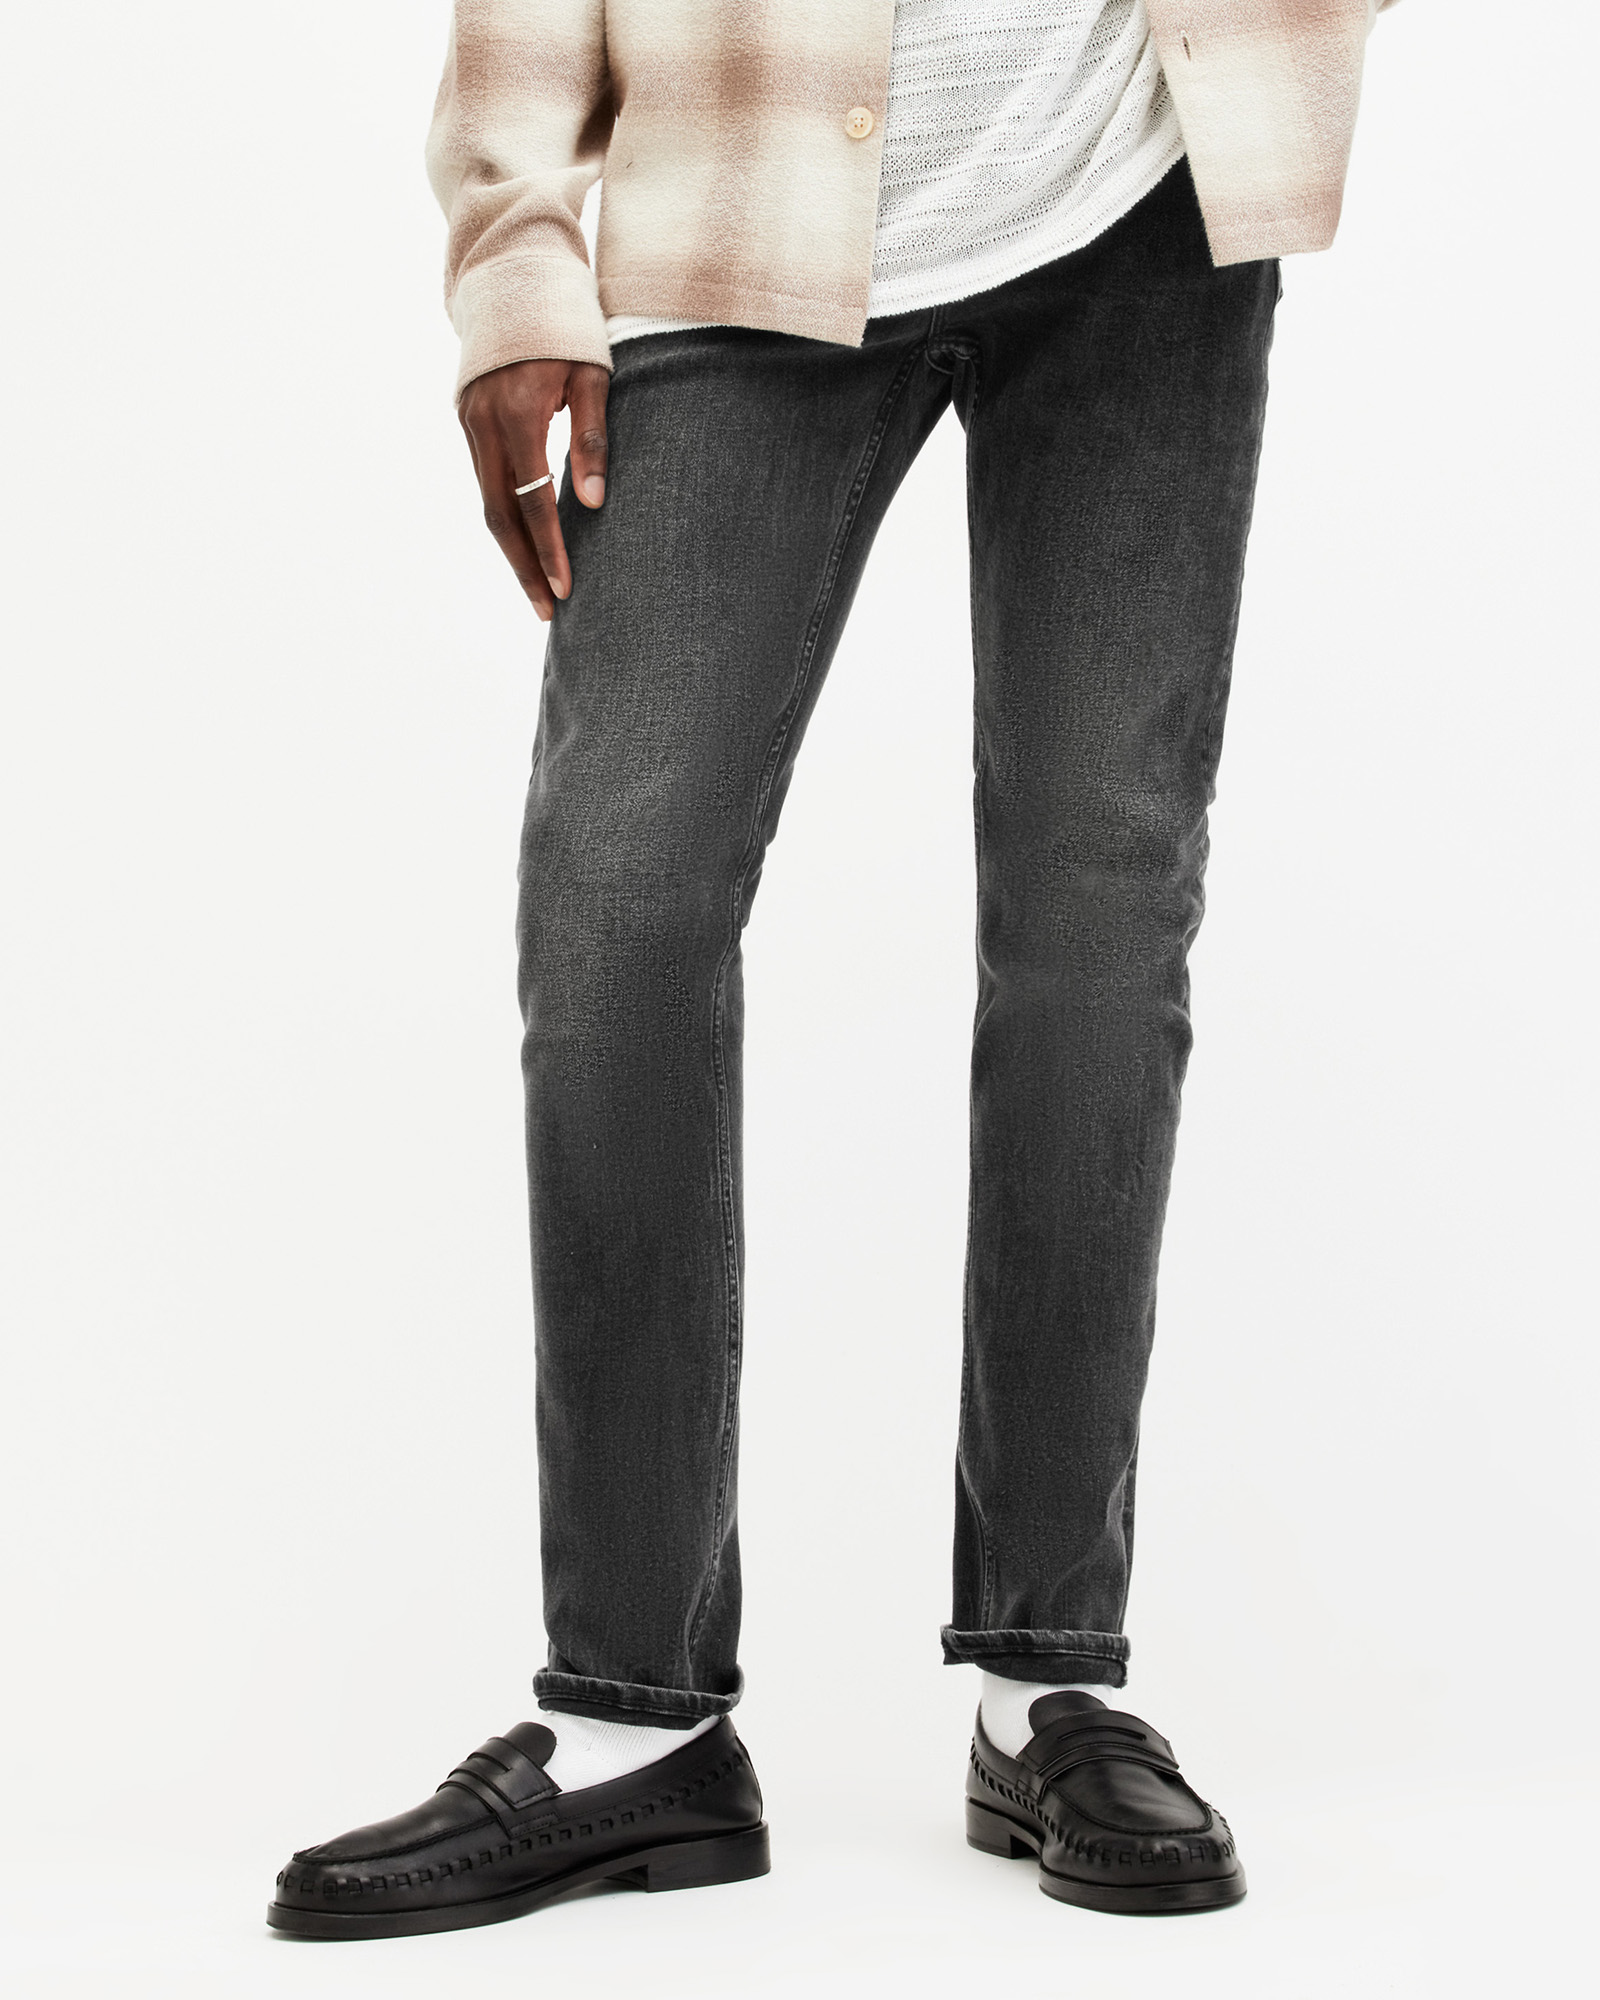 AllSaints Men's Cotton Traditional Cigarette Skinny Jeans, Black, Size: 34/L30